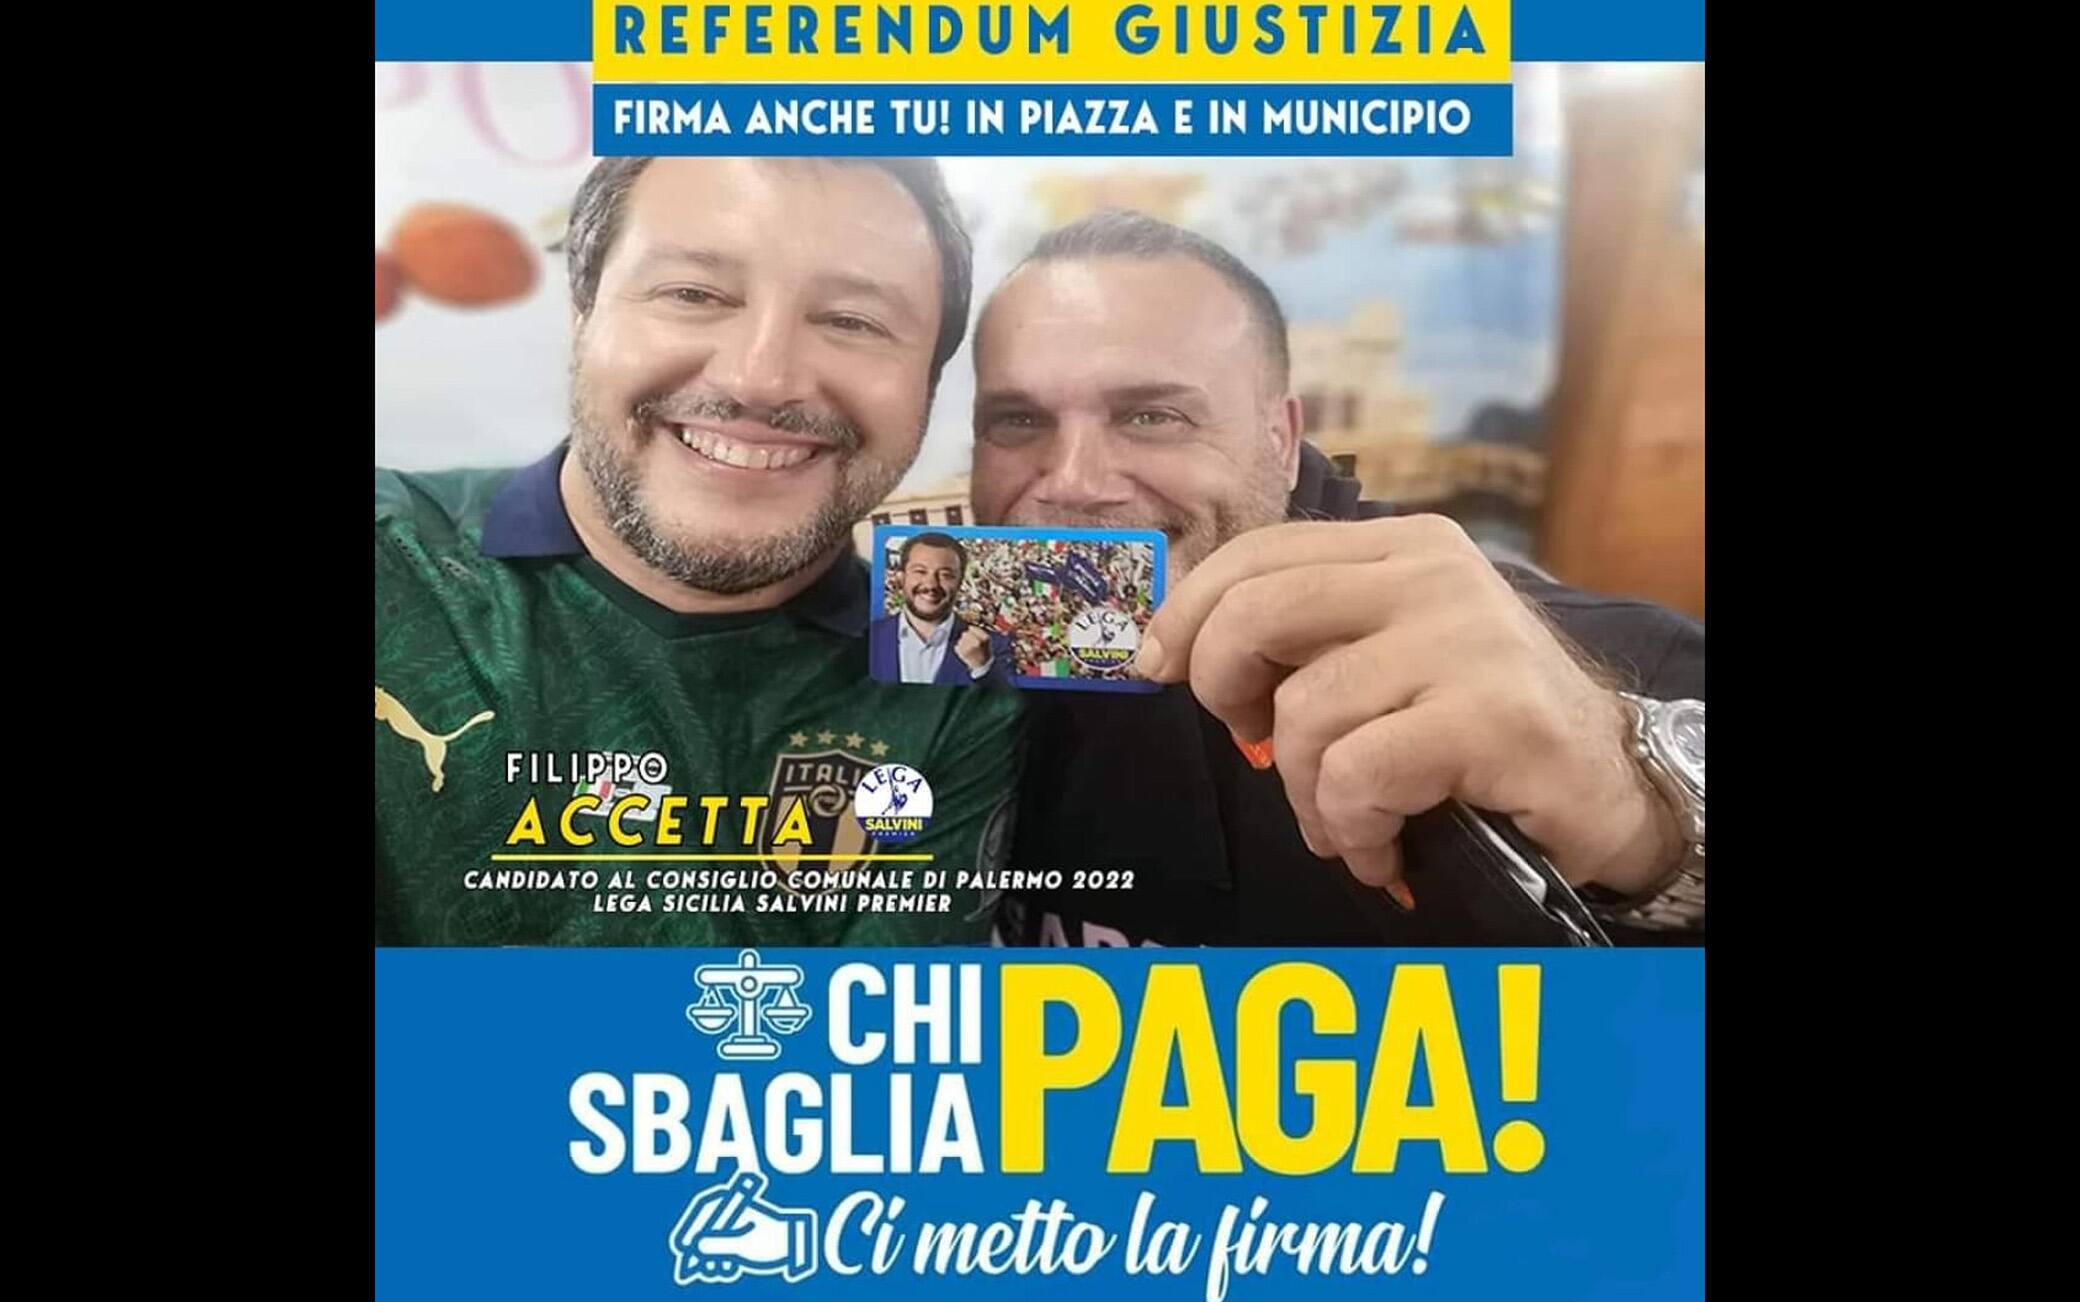 Una locandina elettorale di Filippo Accetta con il leader della Lega Matteo  Salvini.
ANSA